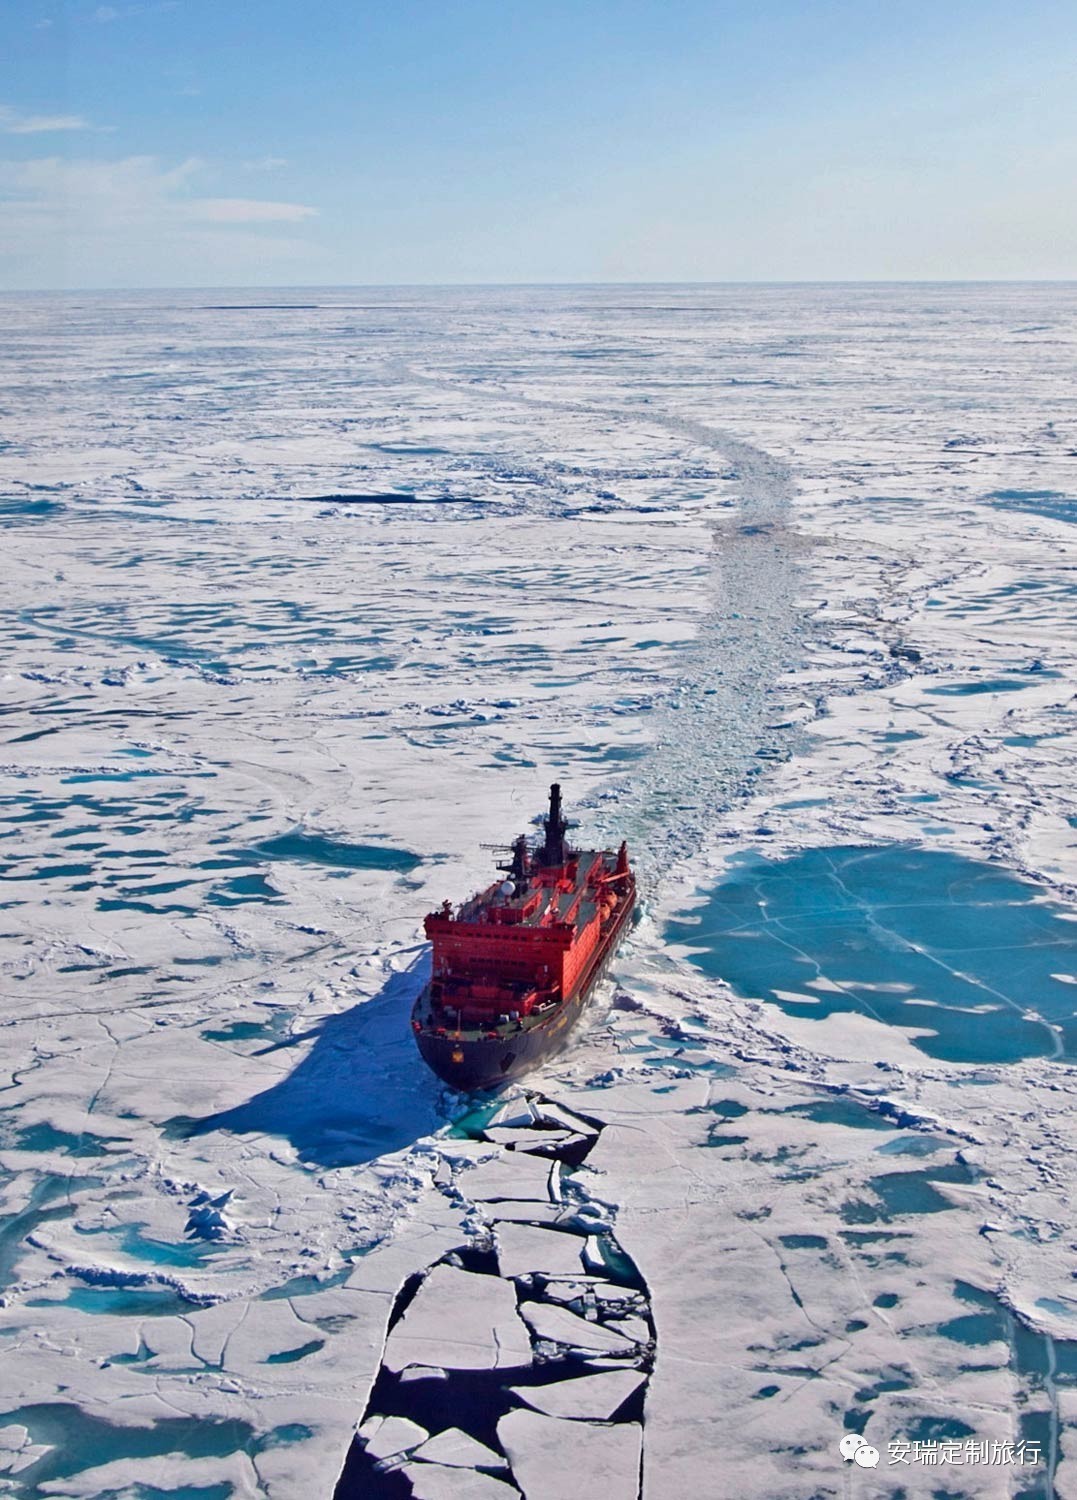 世界之巅丨正北极极点90°破冰之旅启航!